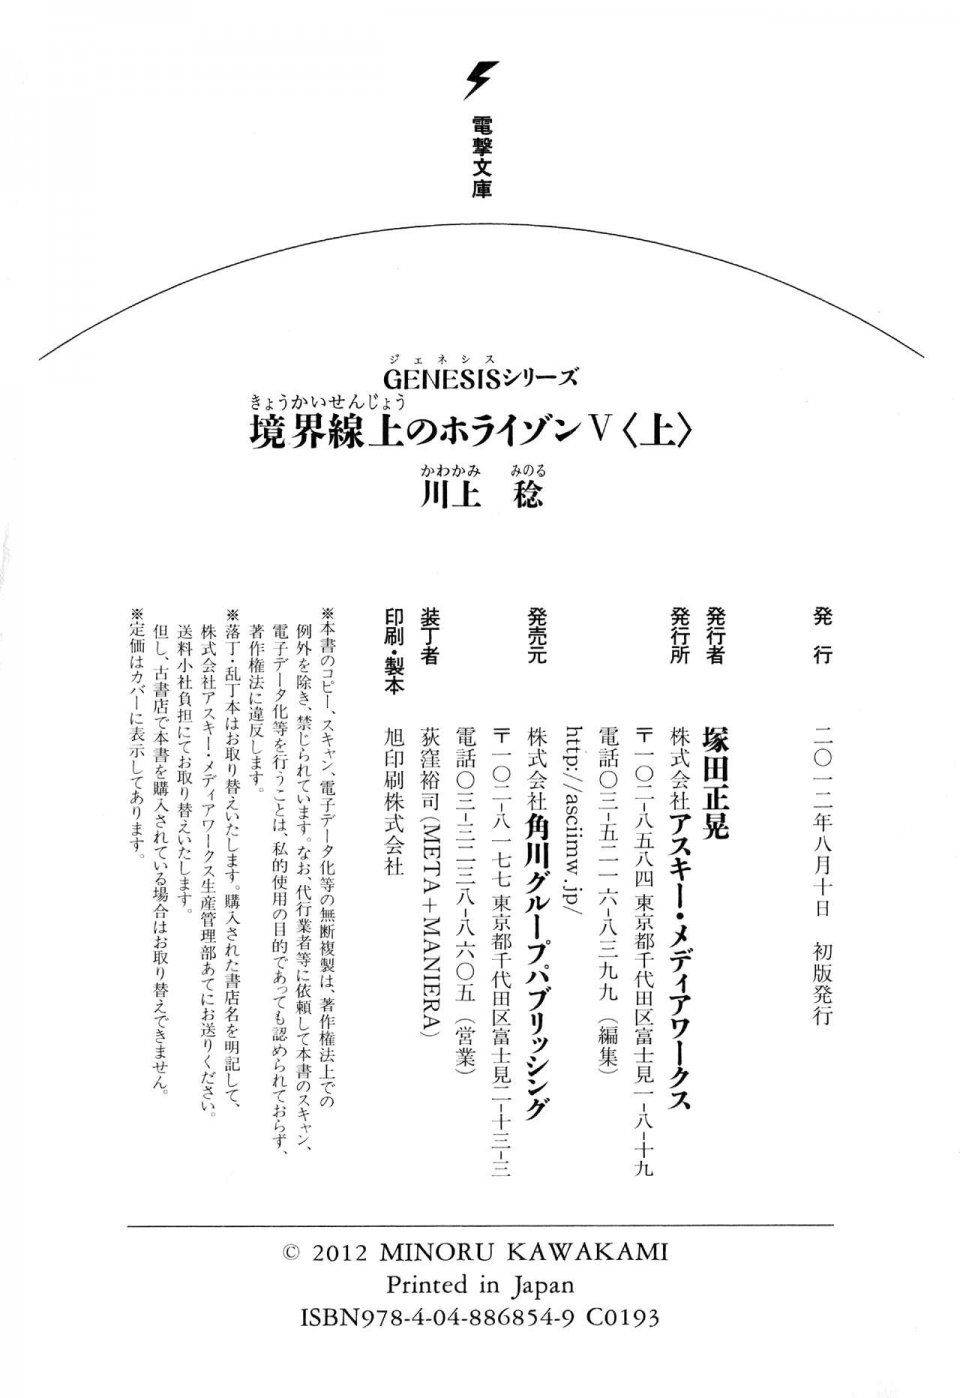 Kyoukai Senjou no Horizon LN Vol 11(5A) - Photo #710